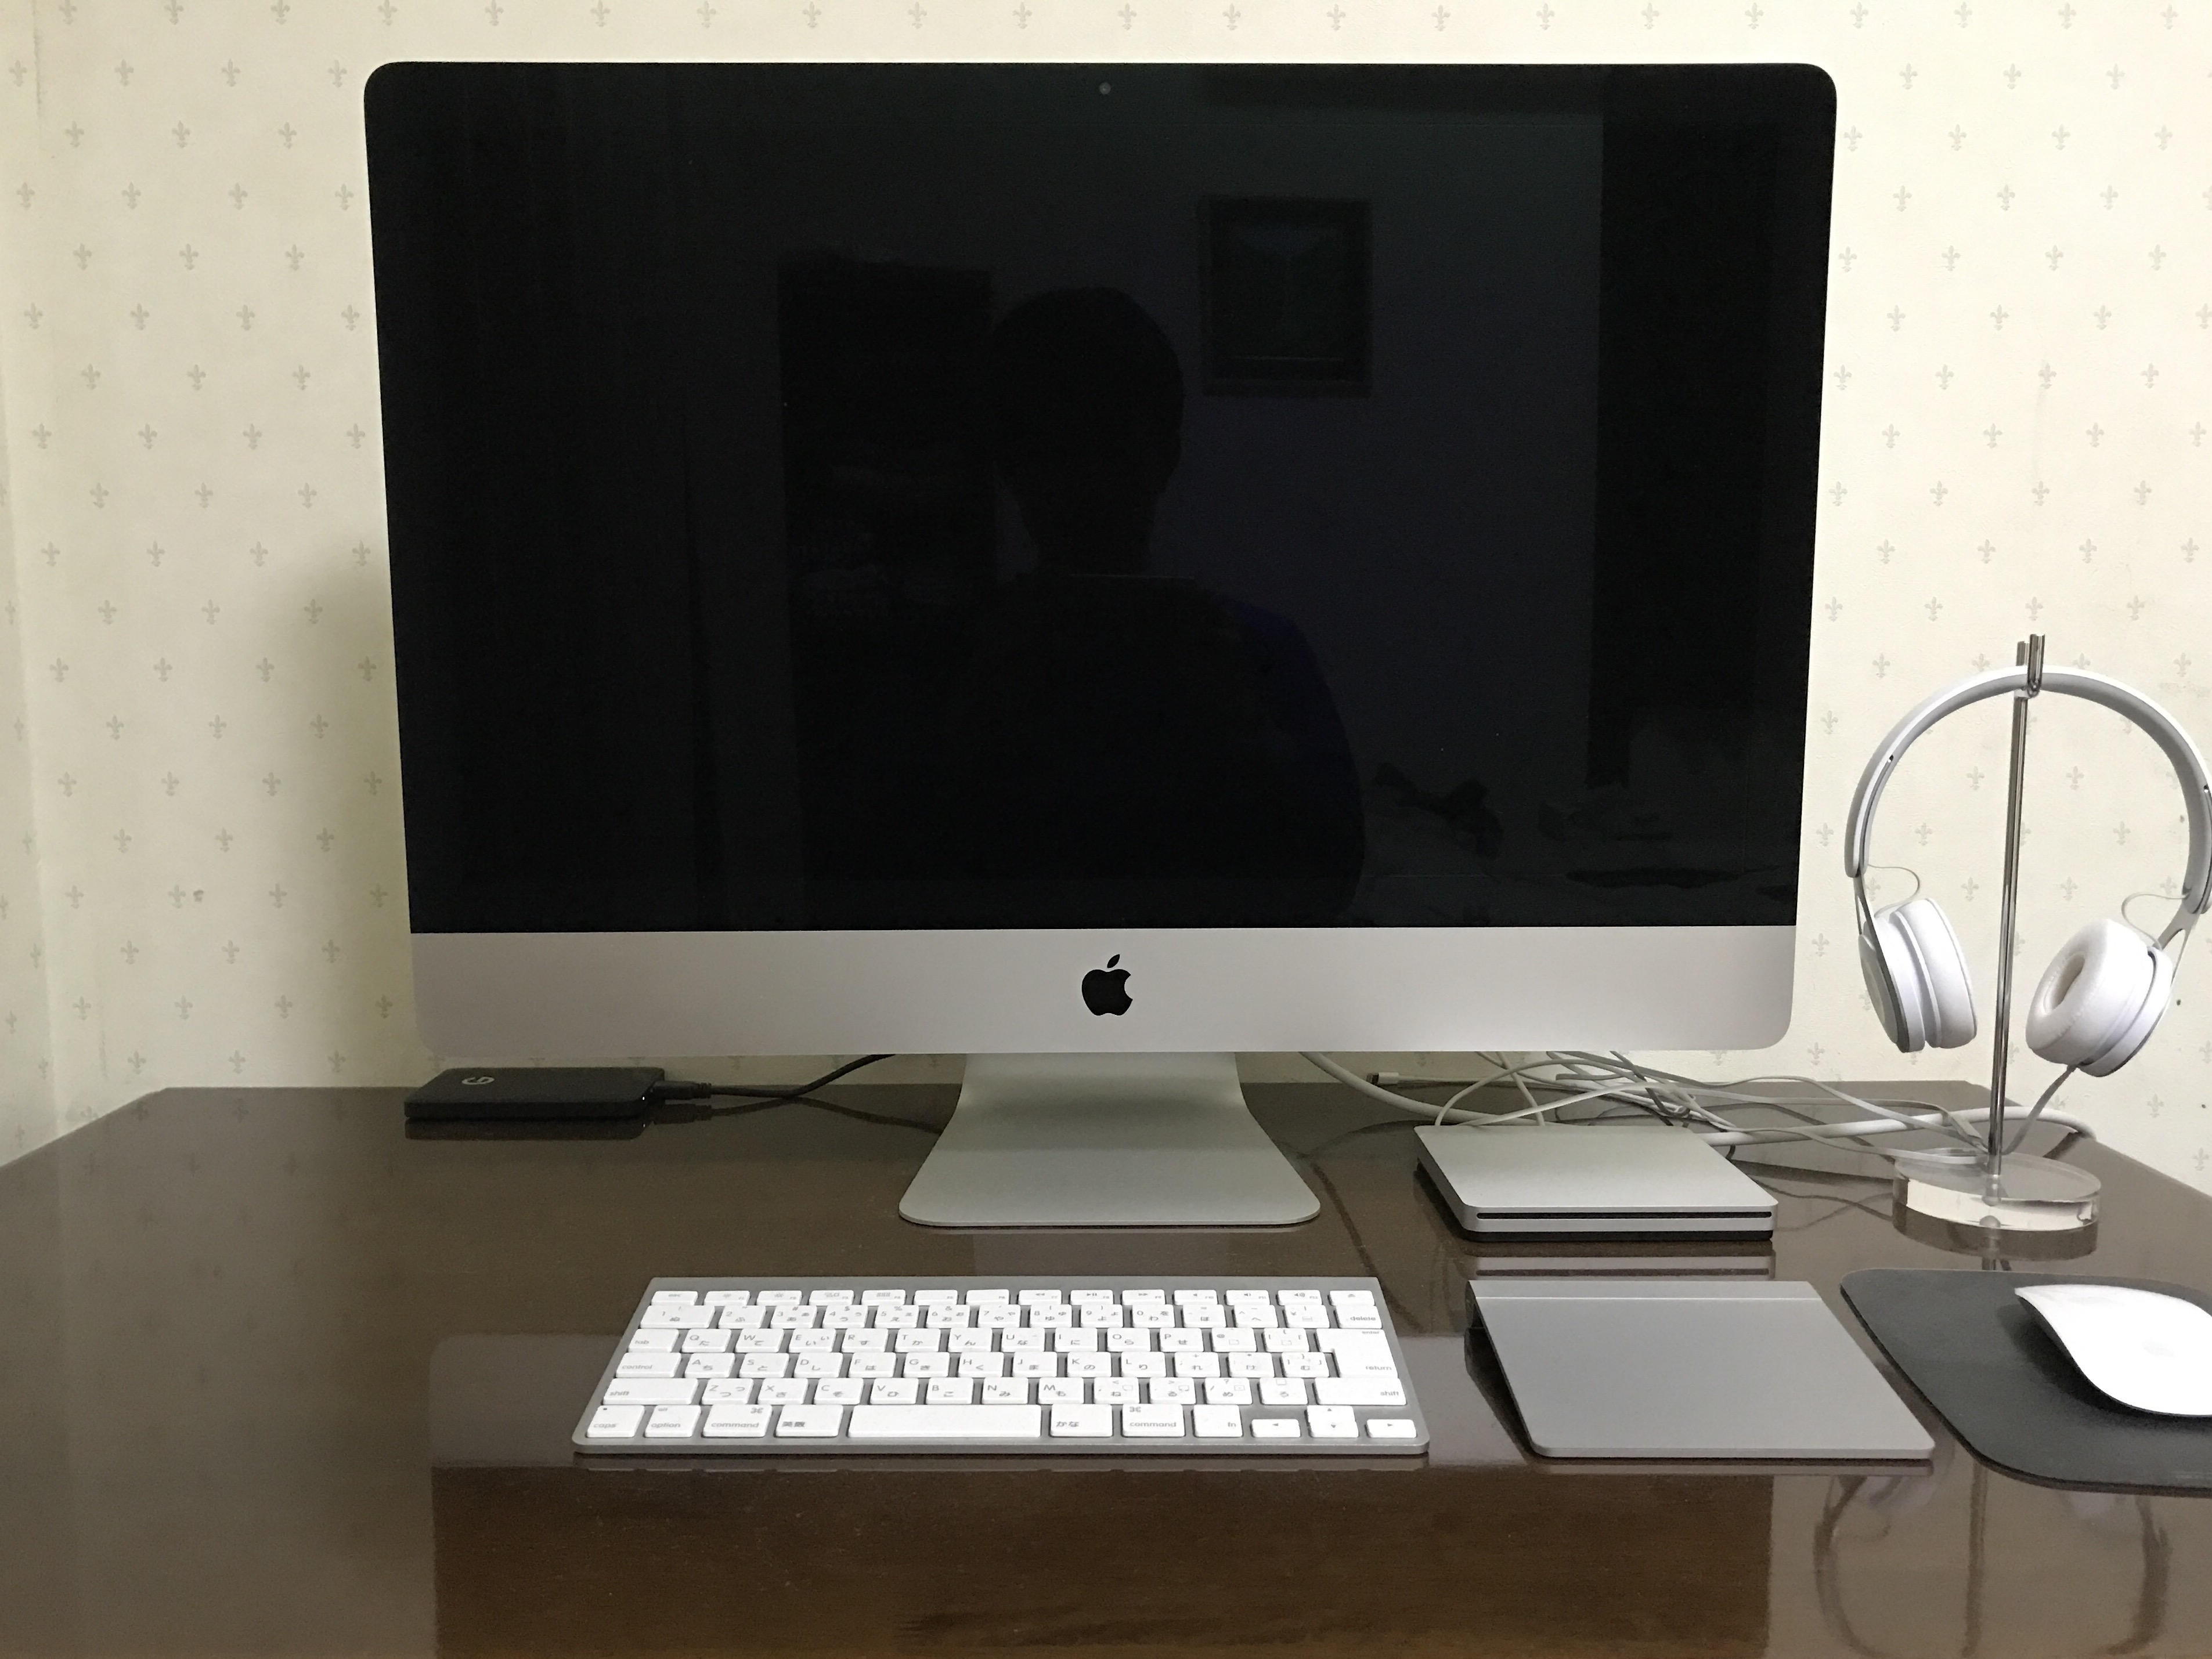 iMacを売却して、MacBookだけを使っていこうか悩んでるって話。